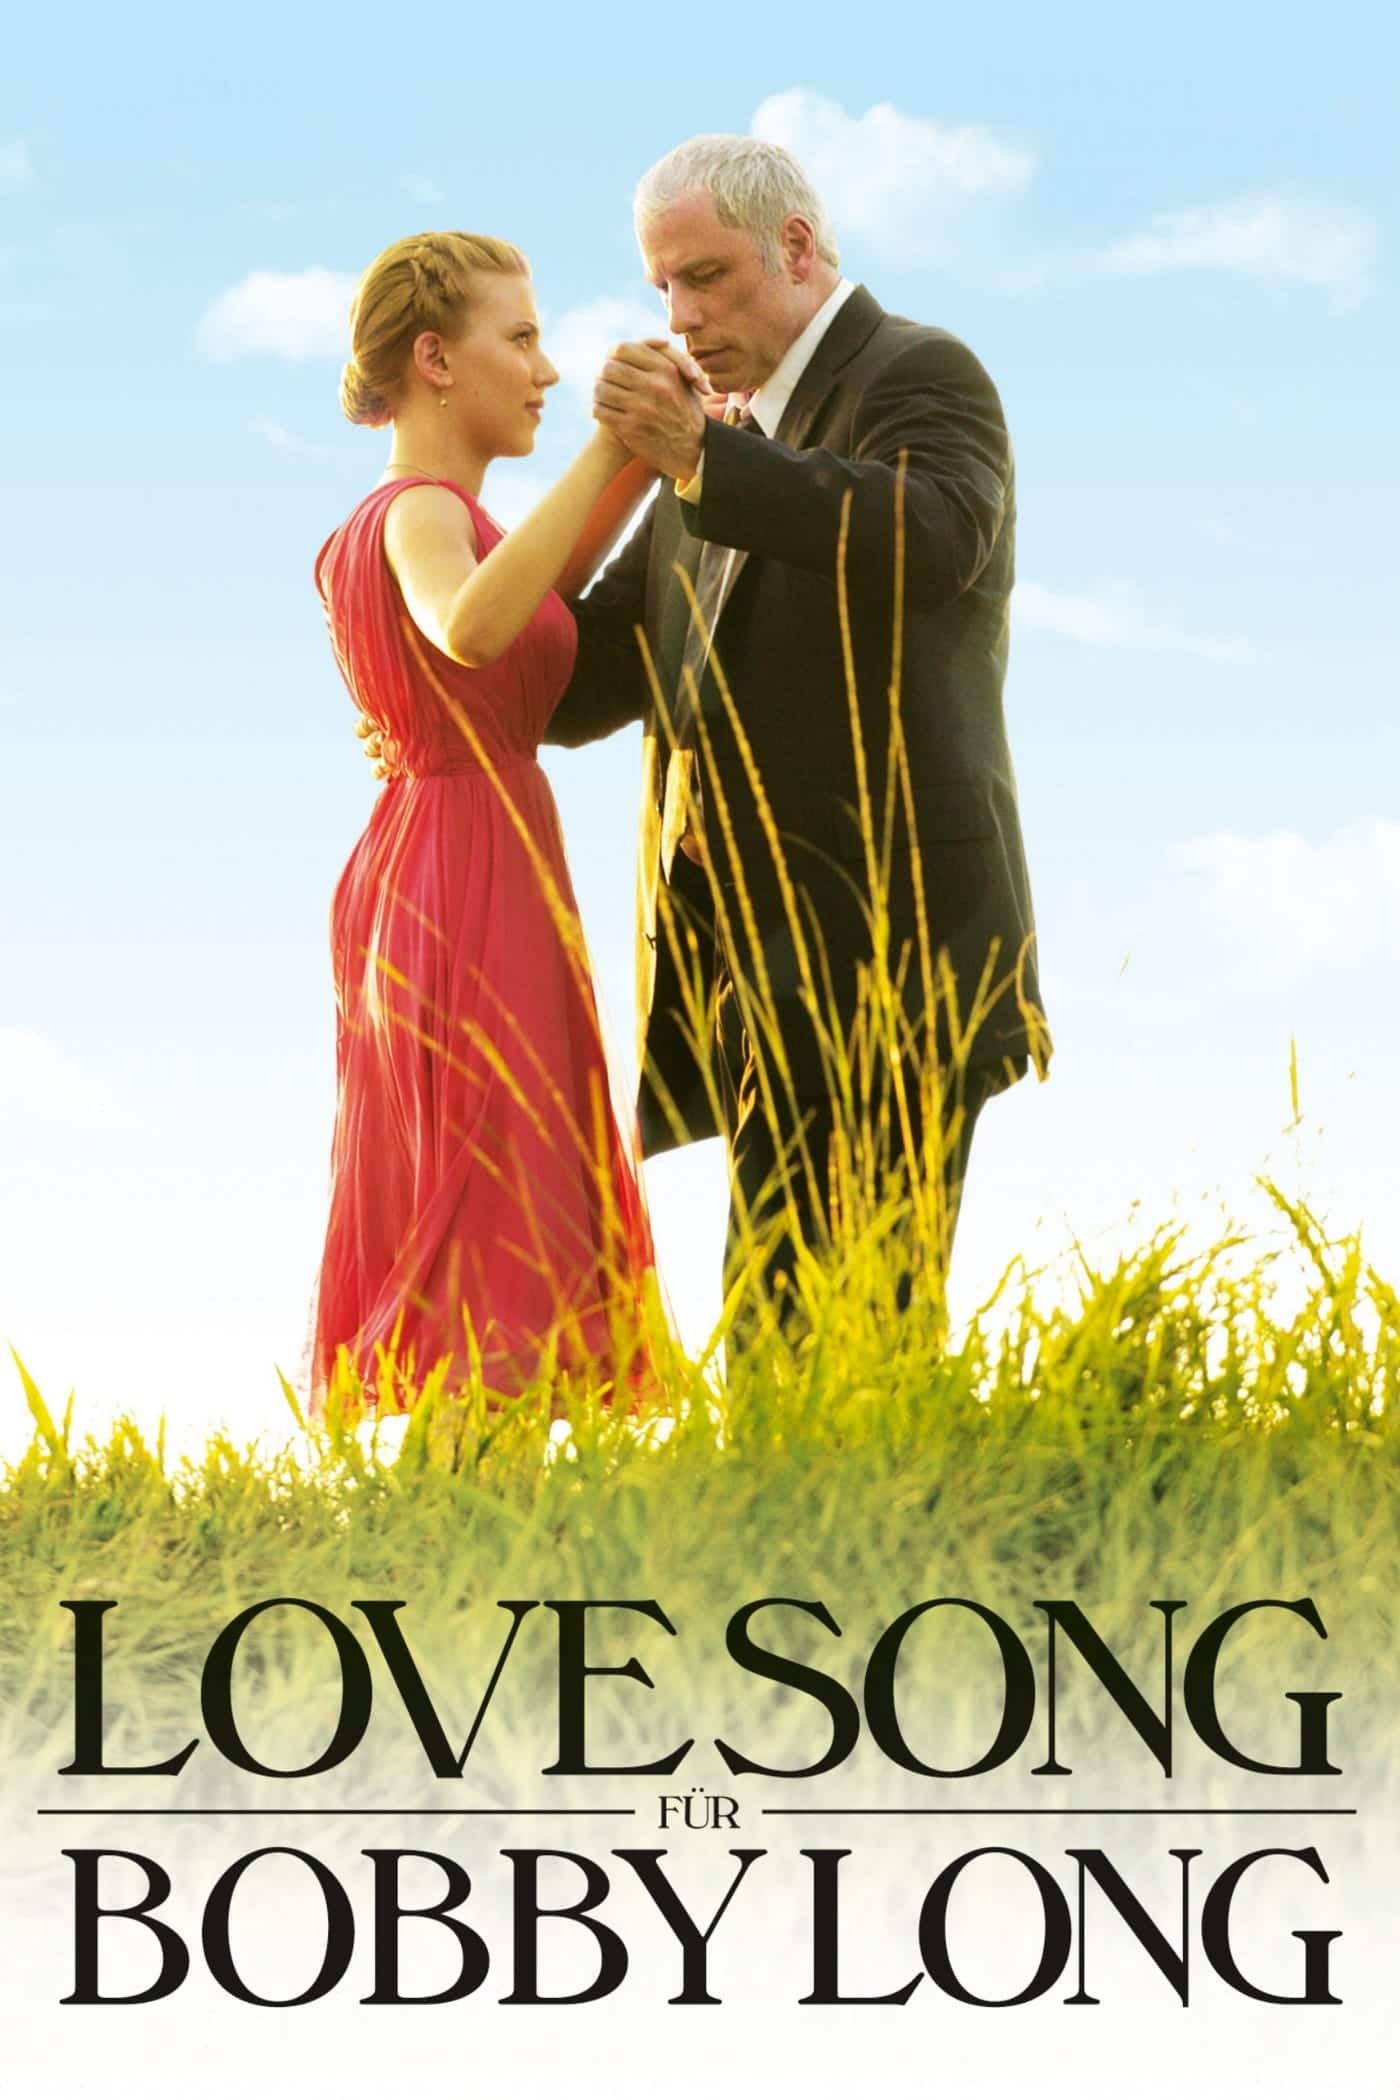 Plakat von "Lovesong für Bobby Long"